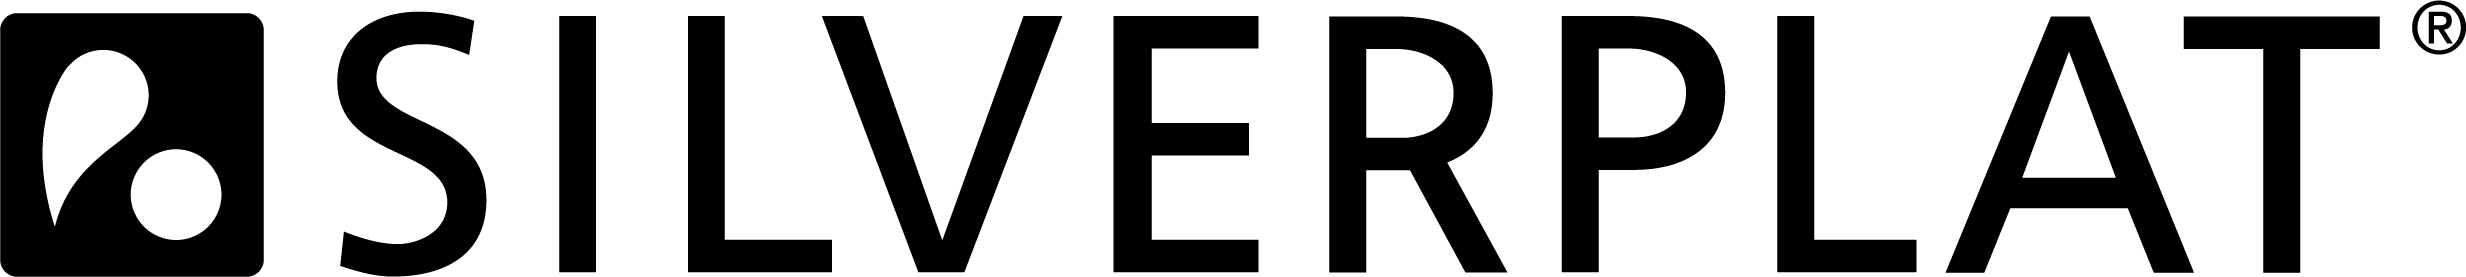 SILVERPLAT Logo 2019 POS